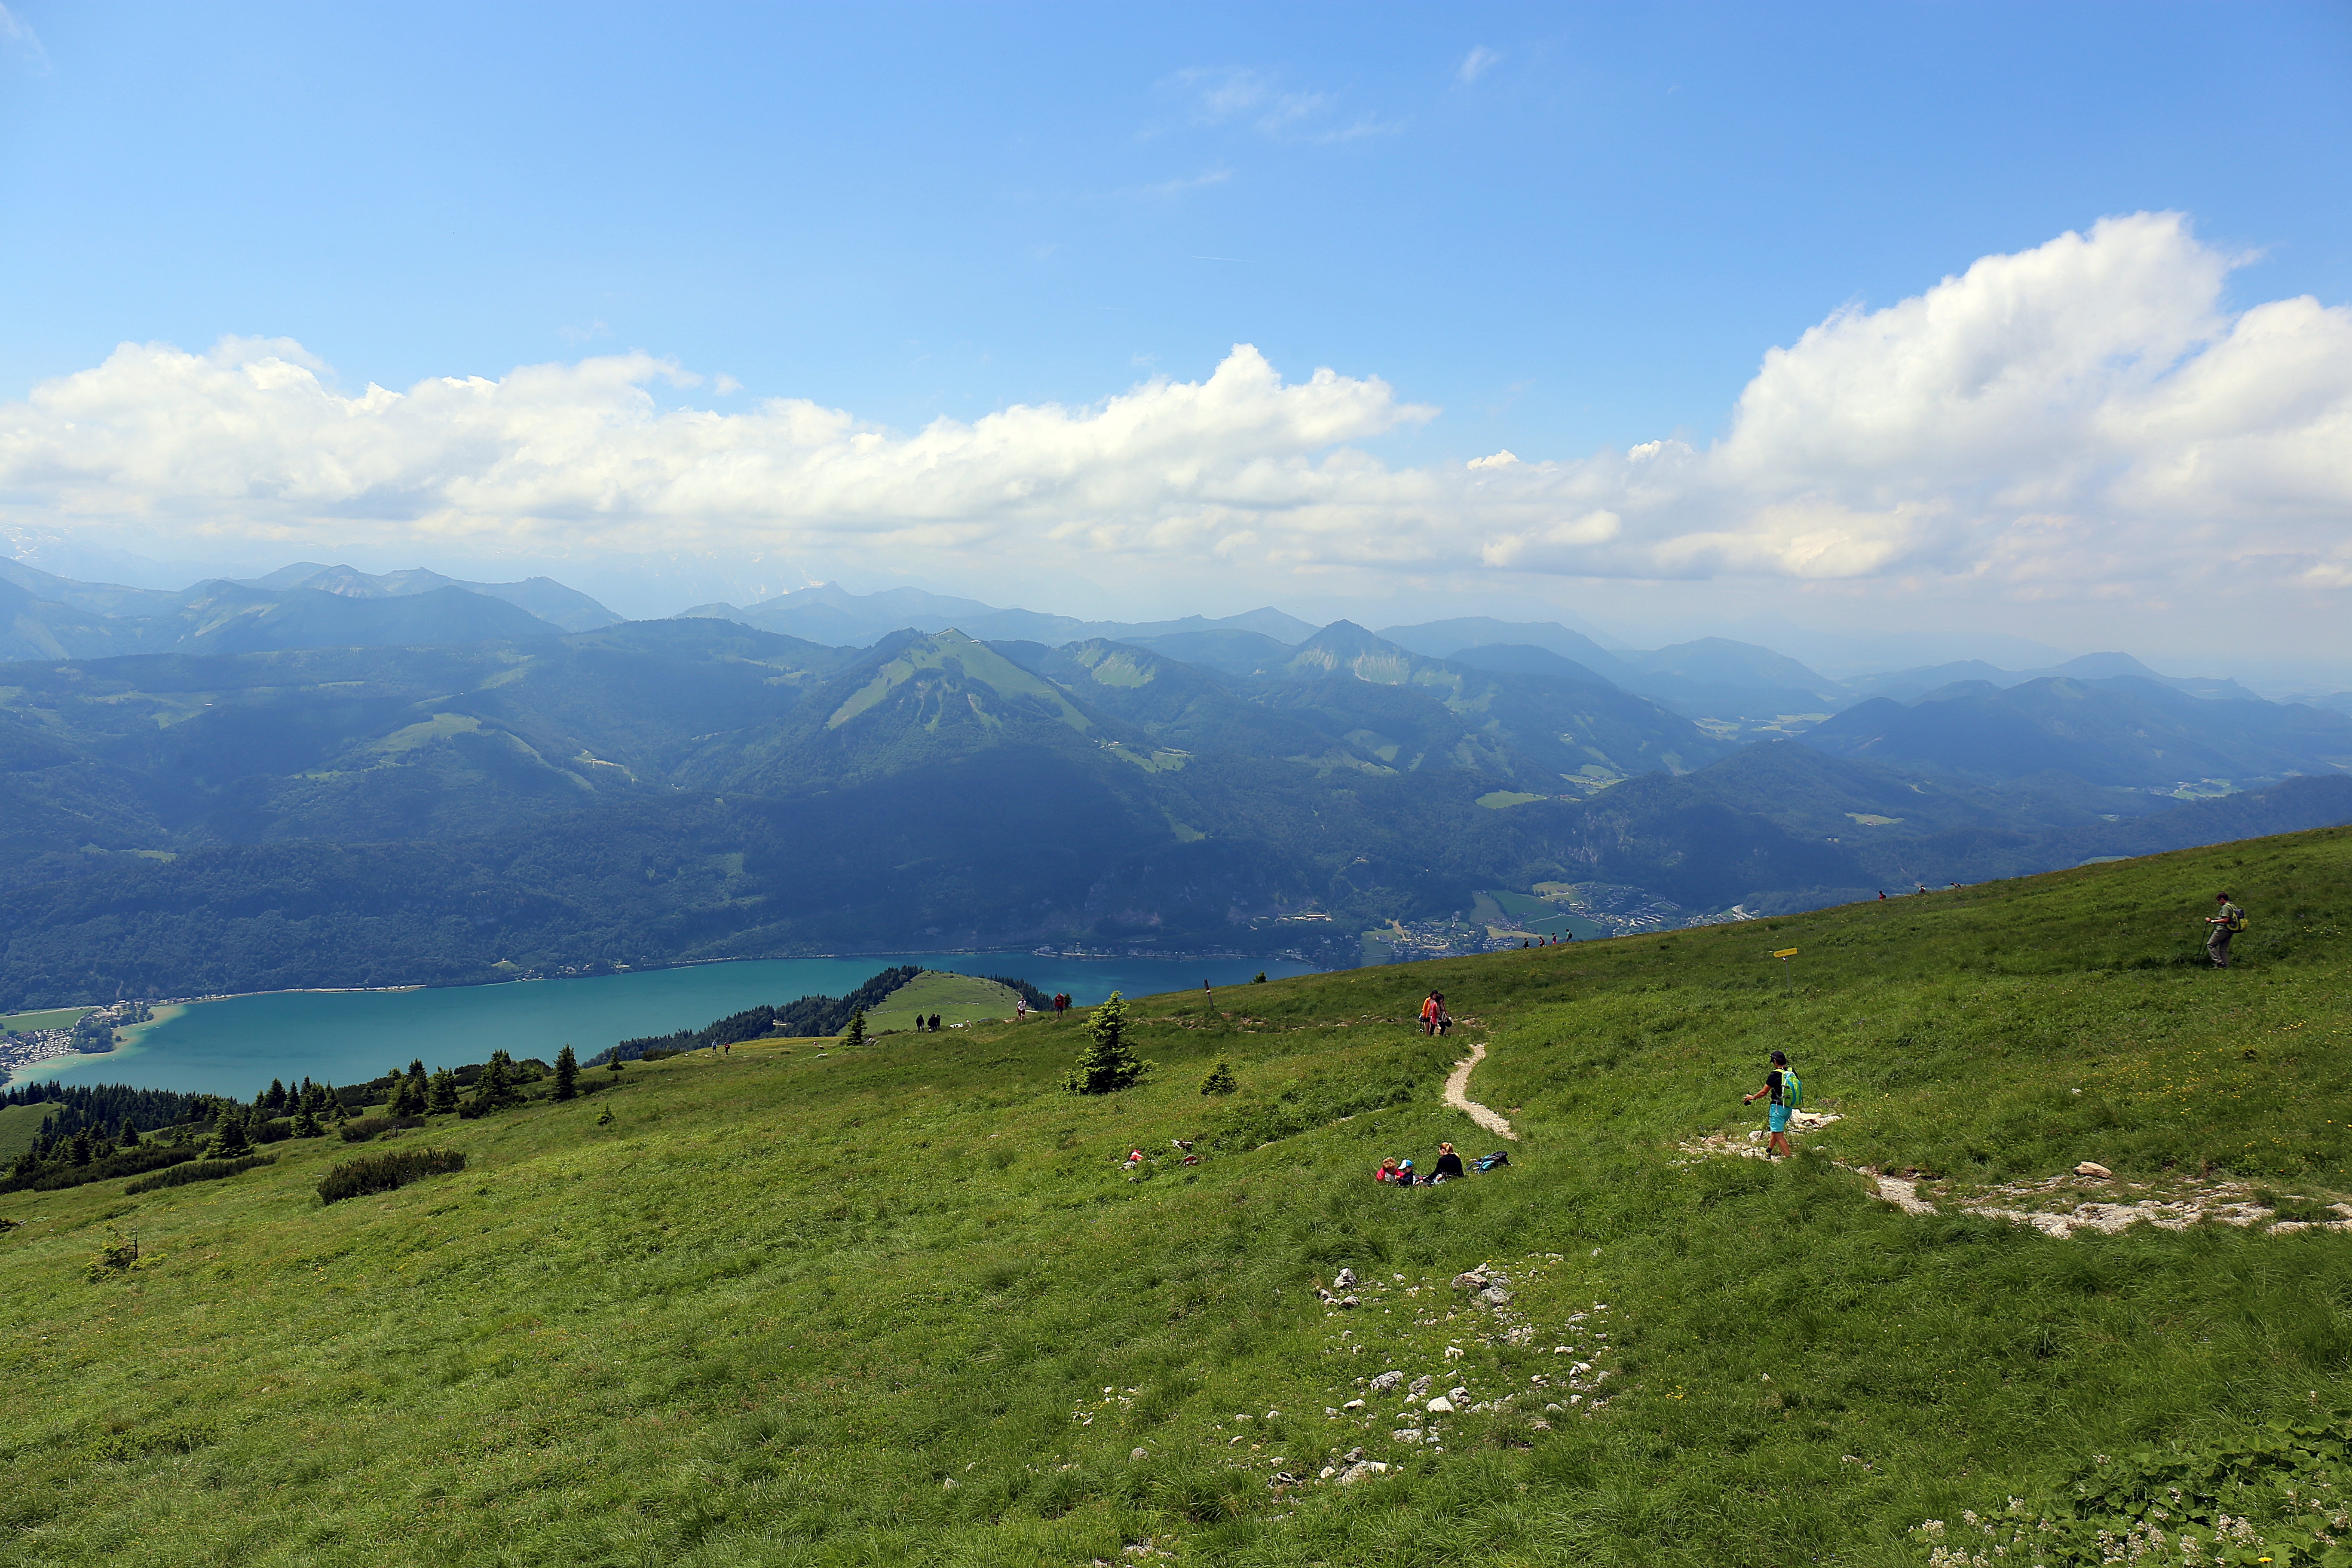 내셔널 지오그래픽은 산악 마을에서 크로스컨트리를 즐길 수 있는 오스트리아를 모험 여행지로 선정했다. 사진은 샤프베르크 산 전경.